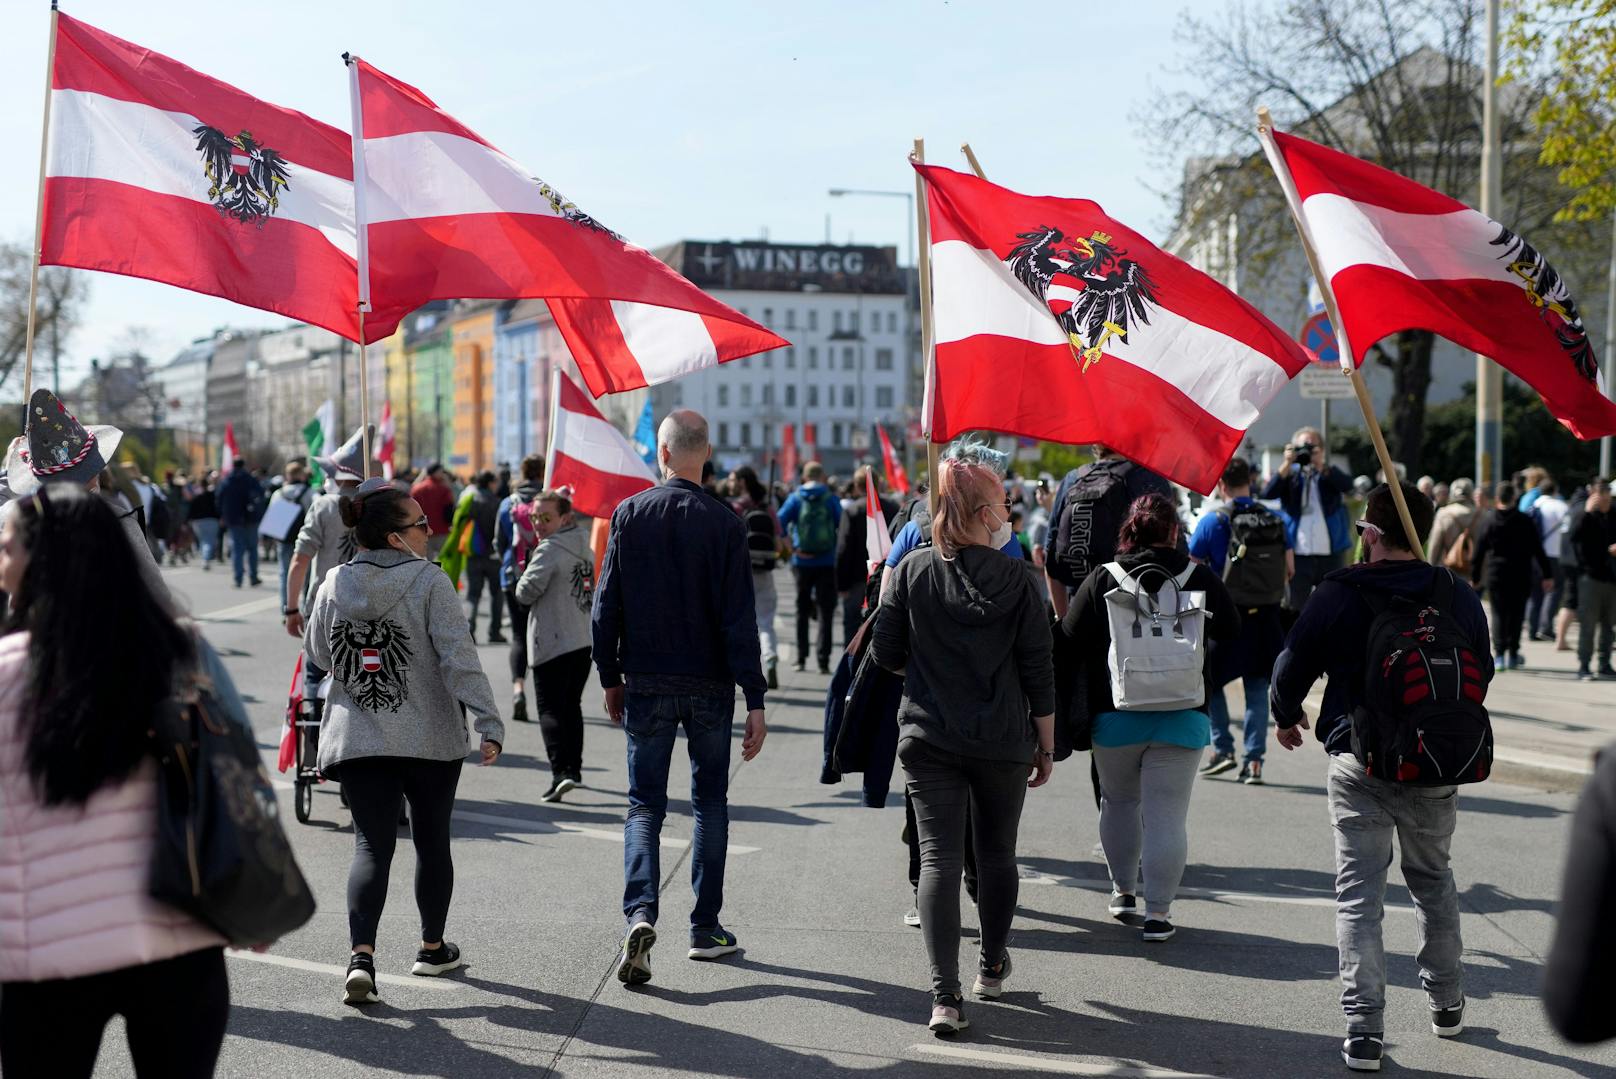 Am Samstag, 10. April 2021, protestierten tausende Corona-Maßnahmengegnern unter dem Motto "Wir holen uns unser Leben zurück" in Wien.